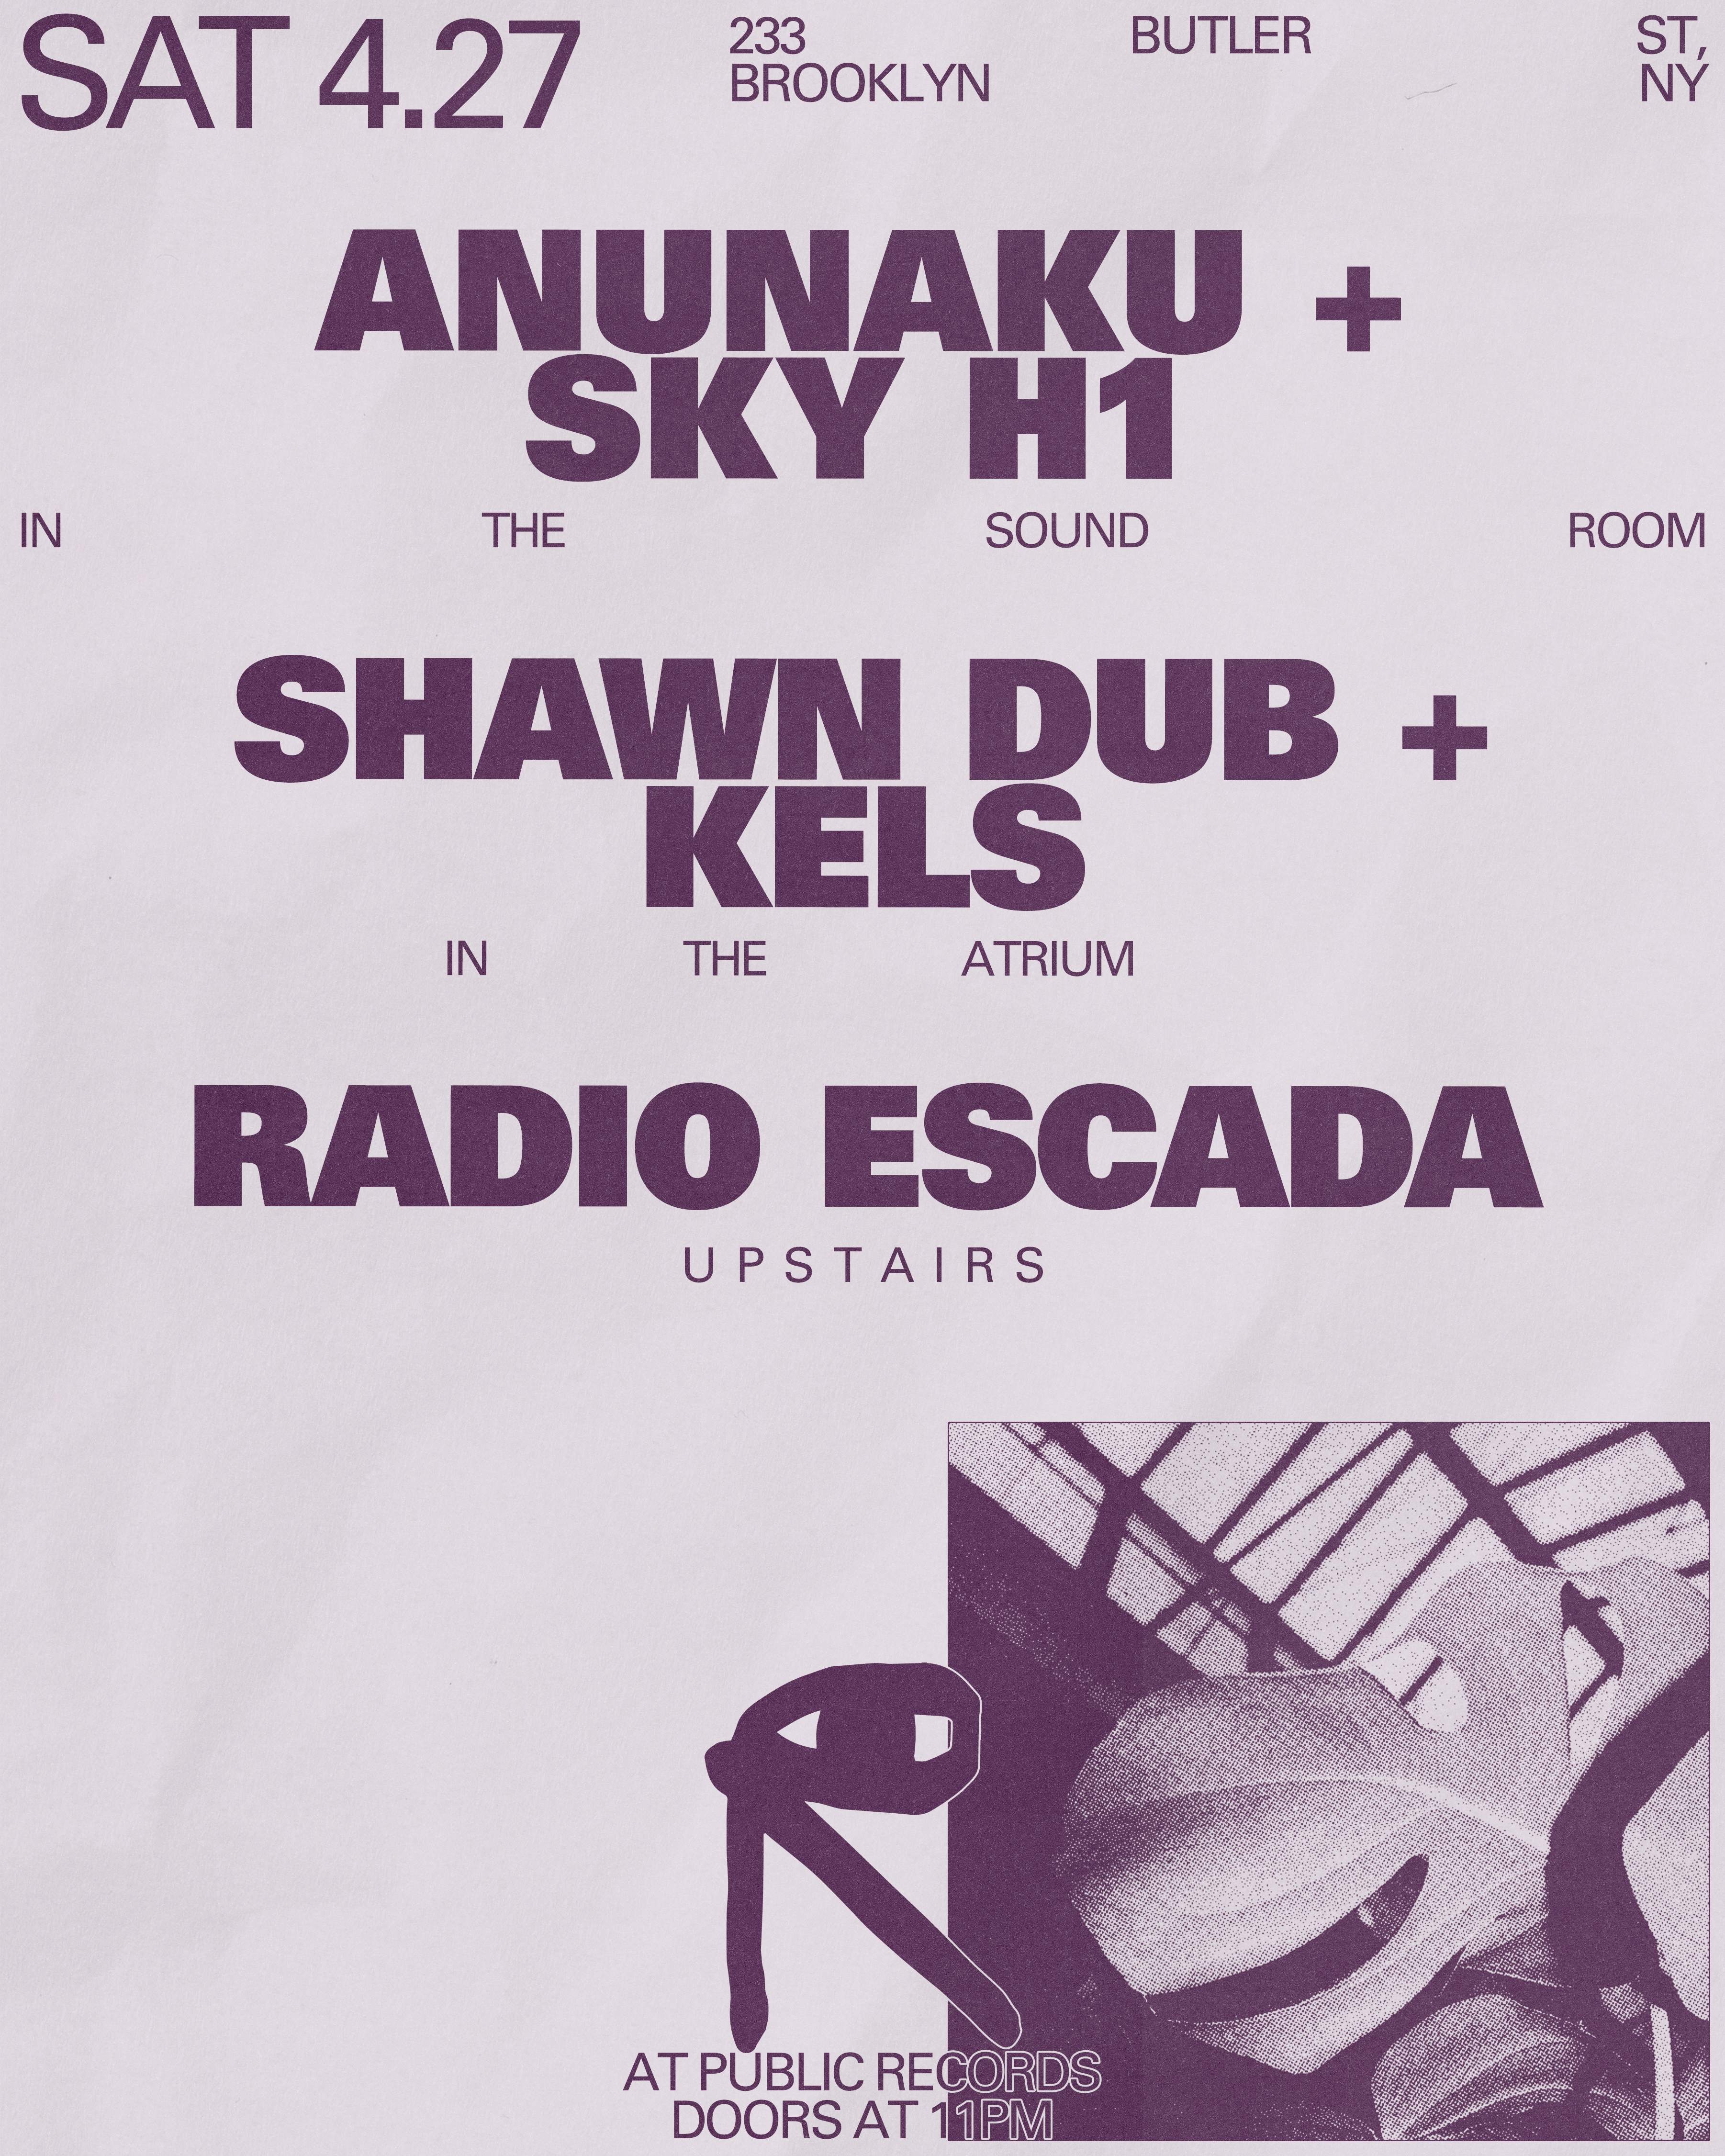 Anunaku + SKY H1 / Shawn Dub + Kels / Radio Escada - フライヤー表